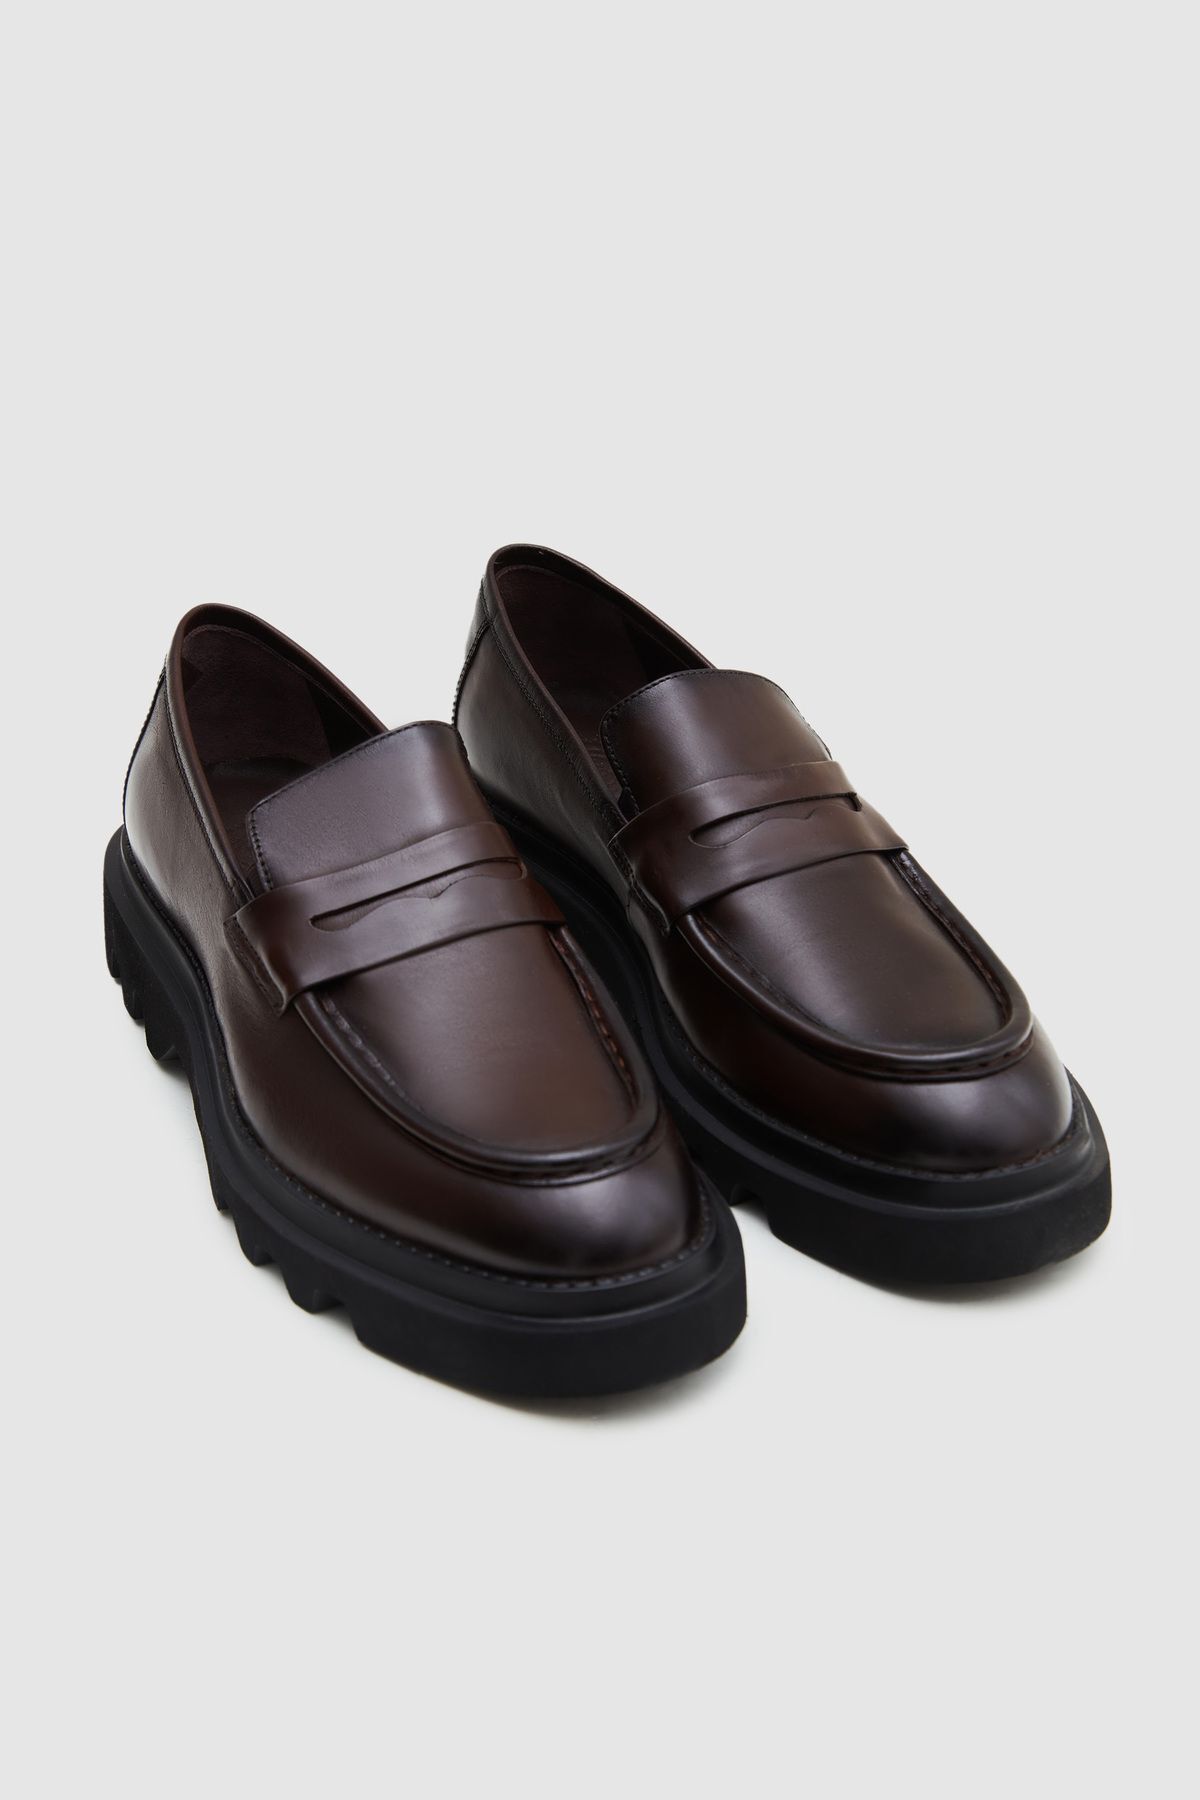 D'S Damat Kahverengi Bant Detaylı Deri Loafer Ayakkabı